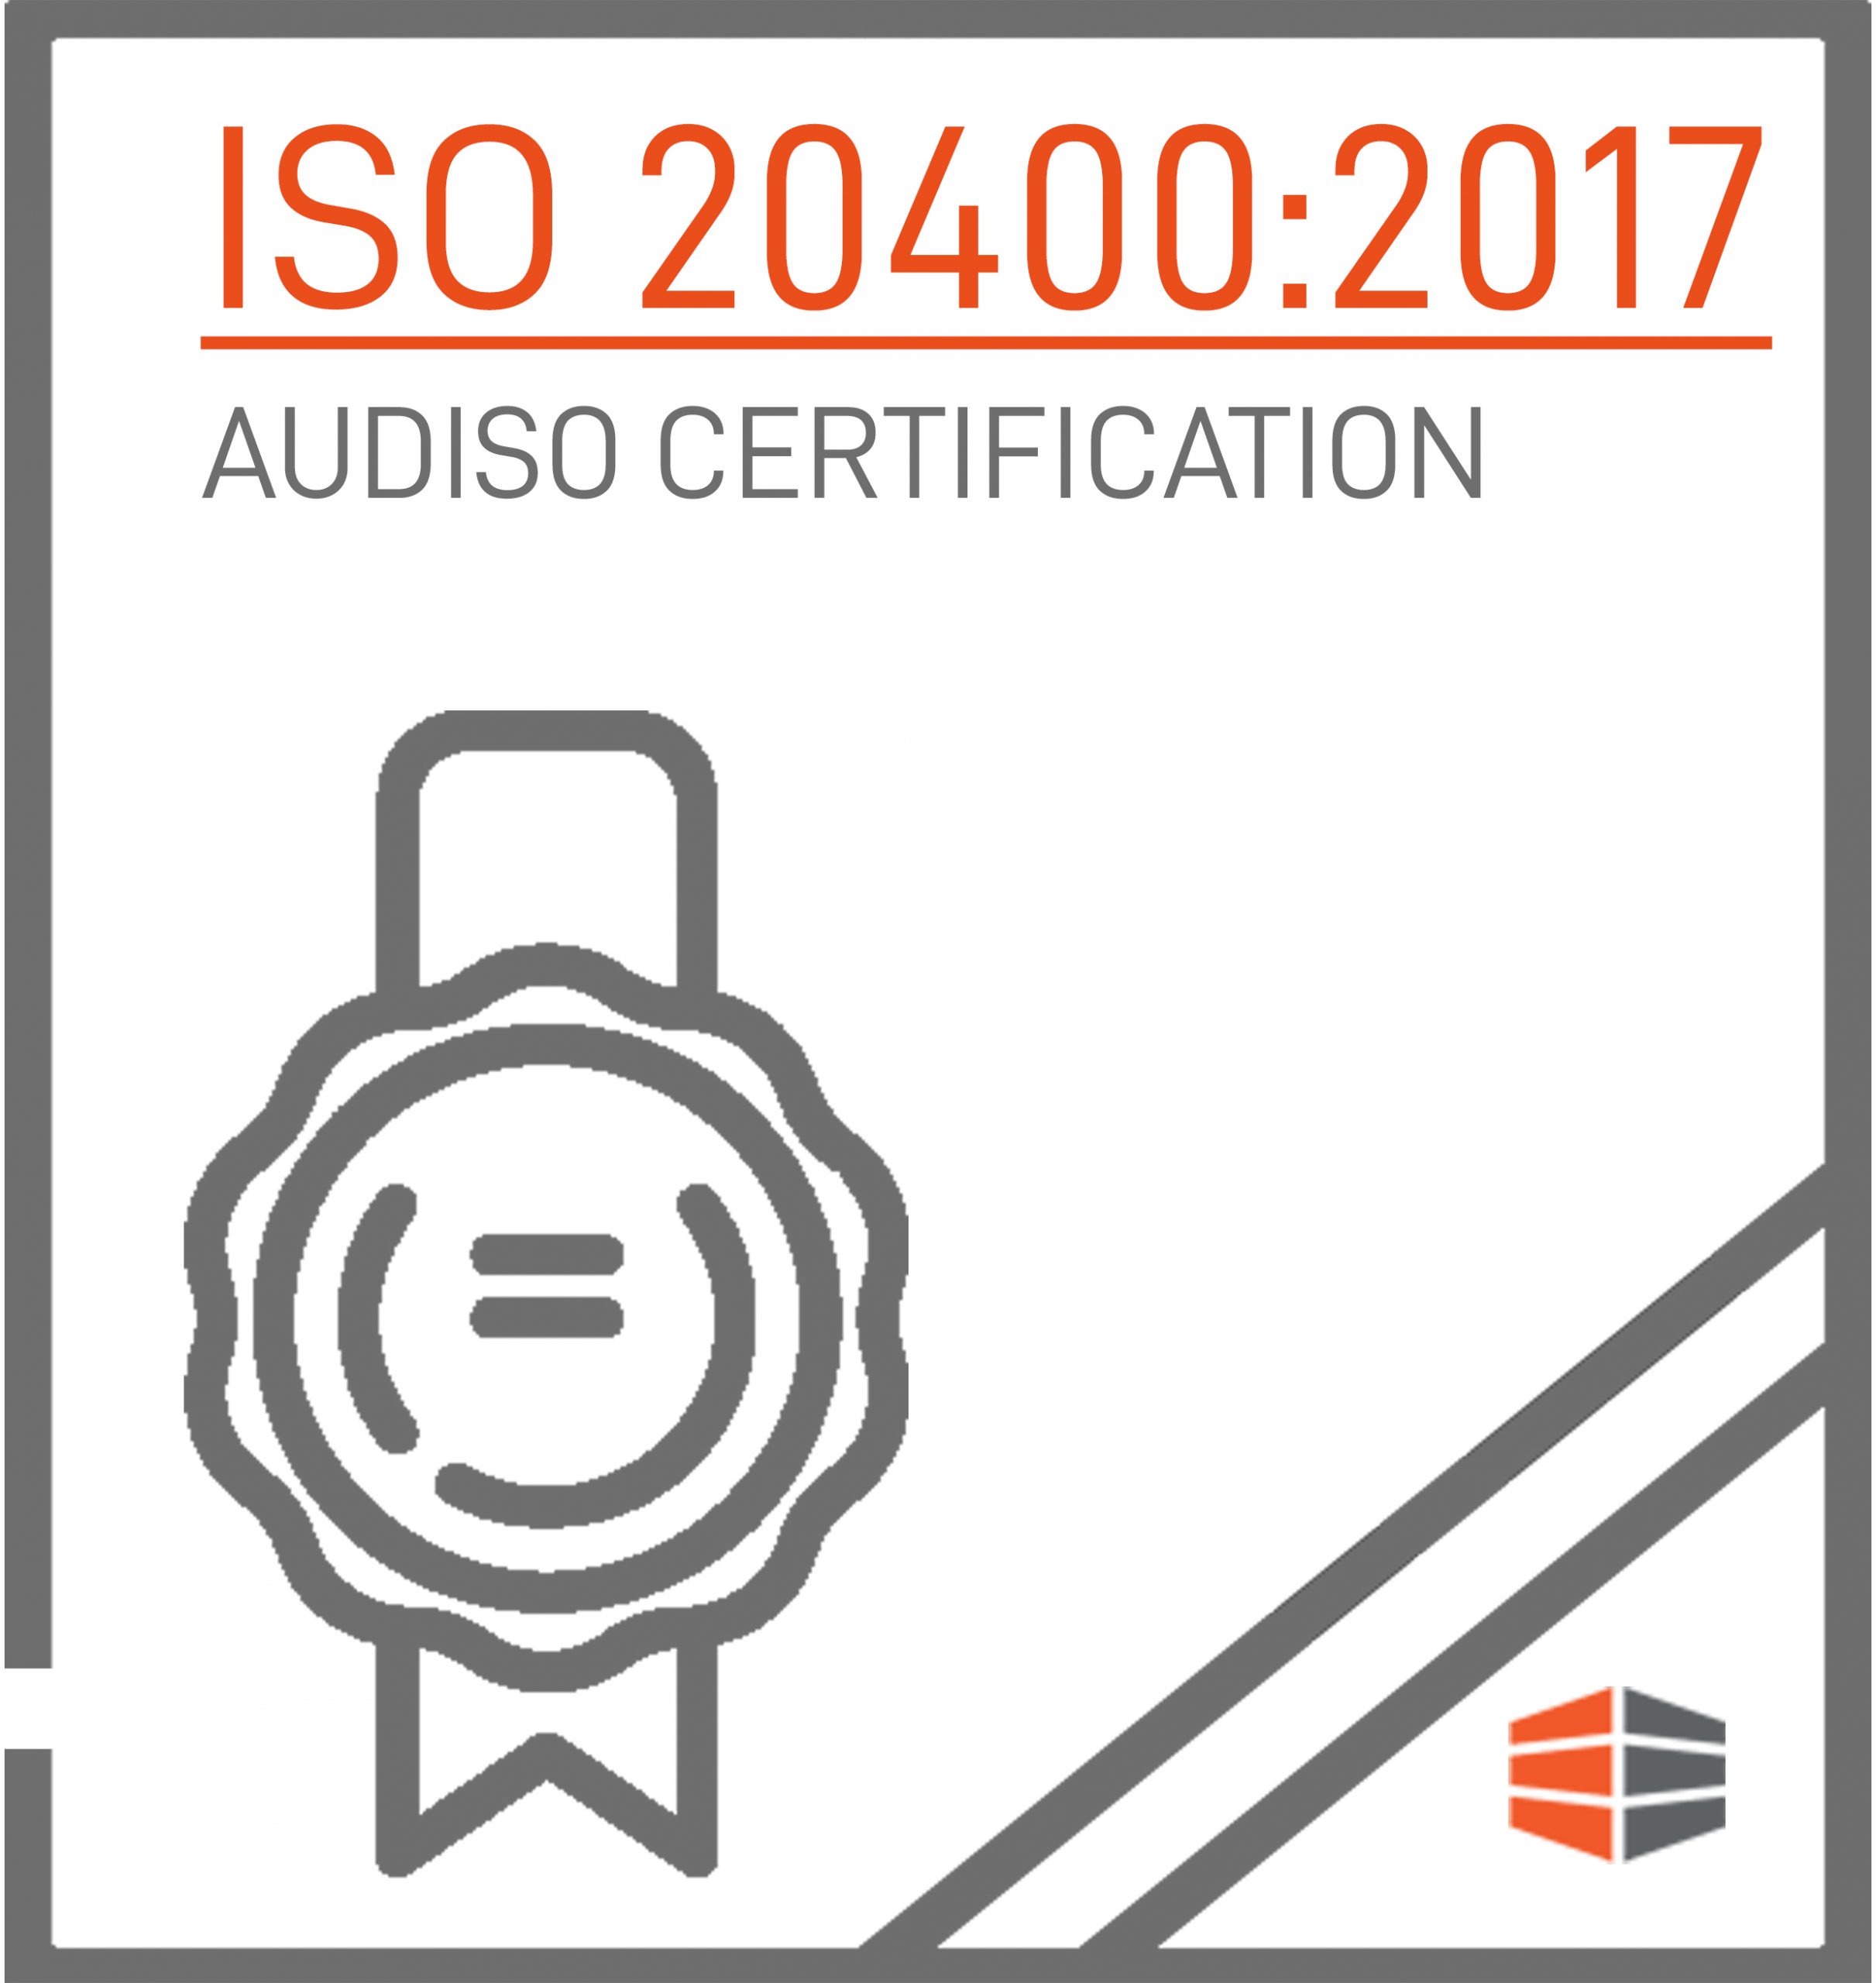 Certificazione ISO 20400:2017 Rilasciata da AUDISO CERTIFICATION